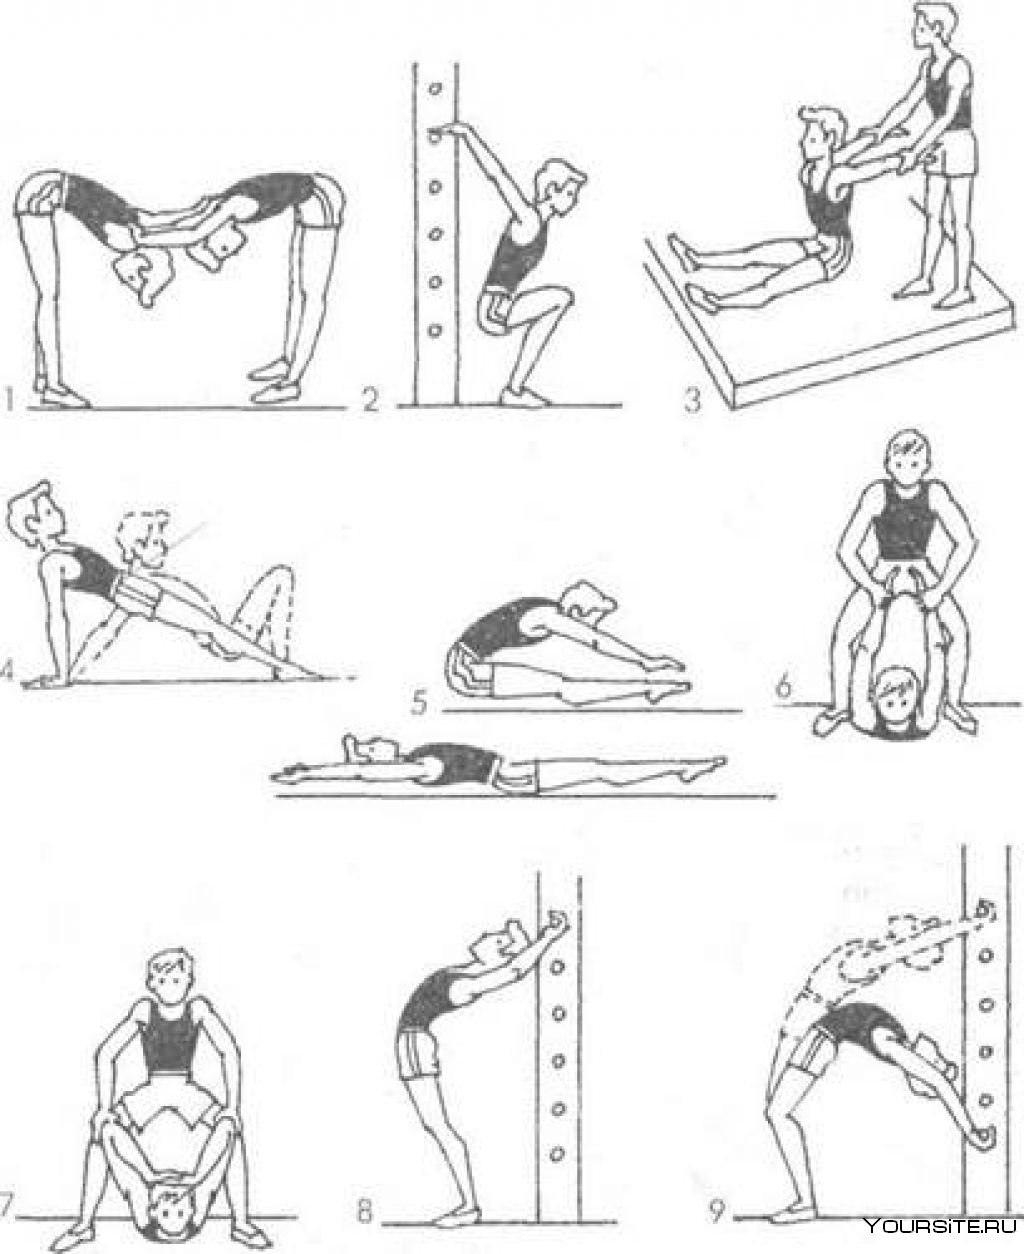 Тазобедренный сустав физические упражнения